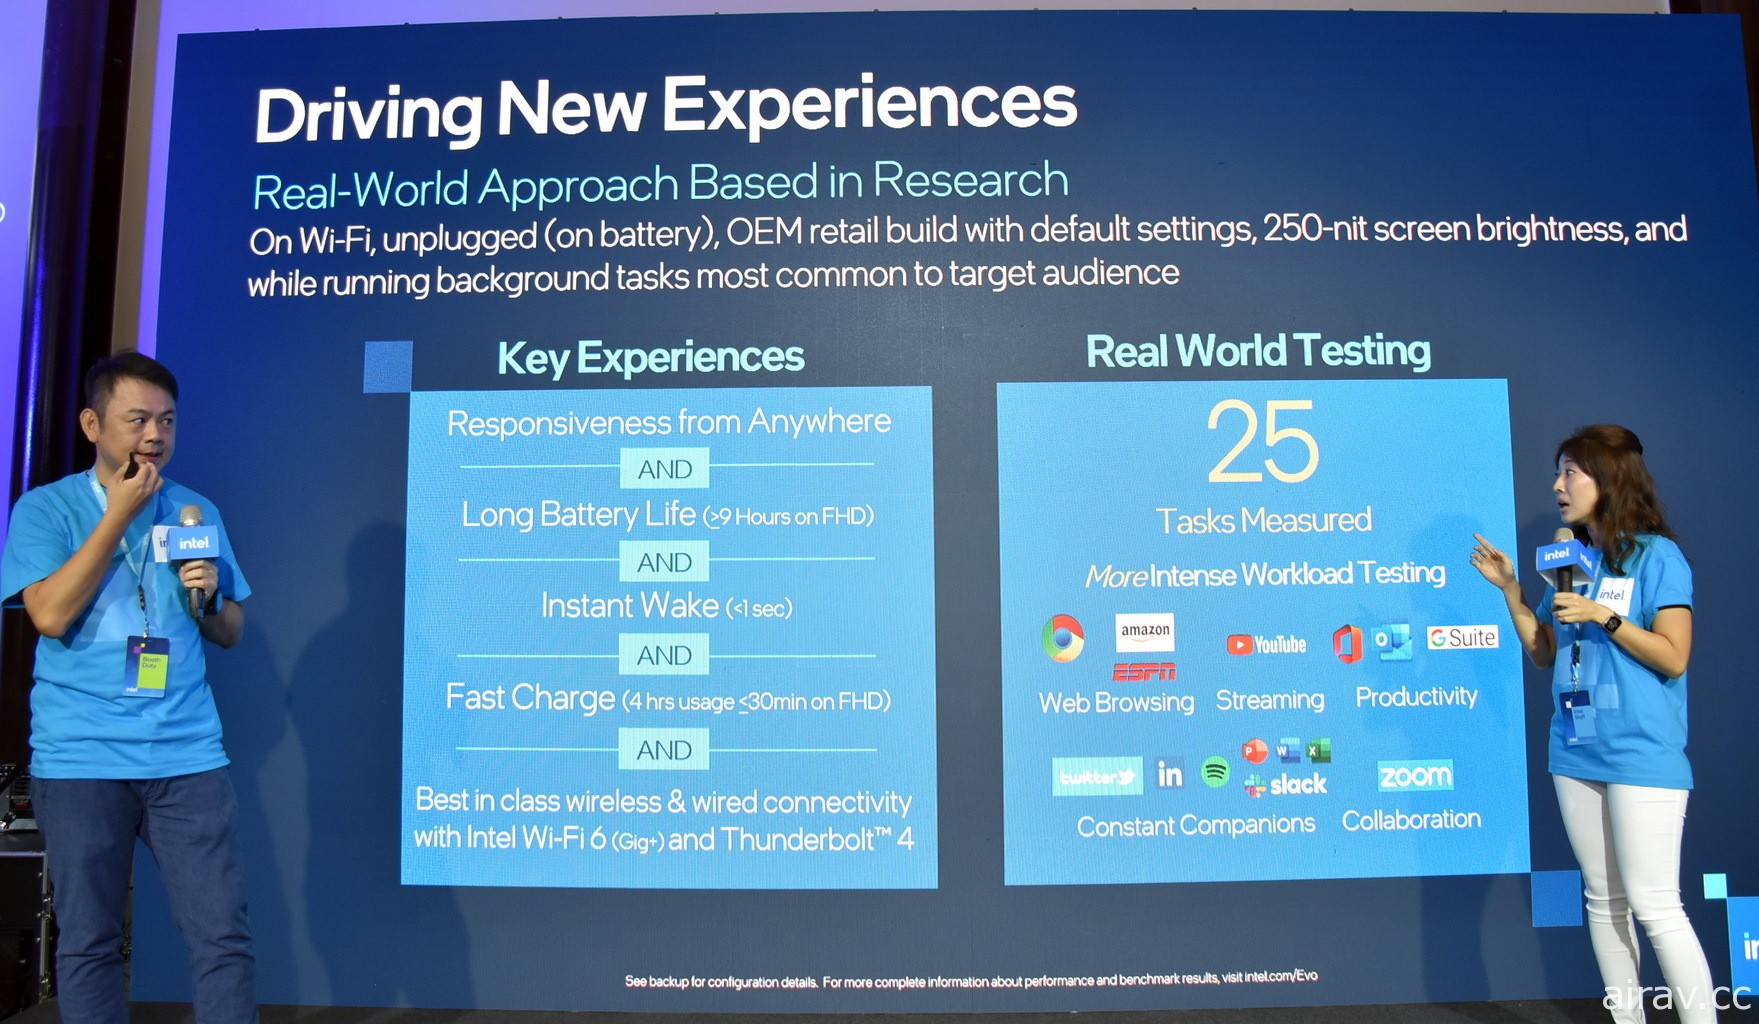 英特爾集結多款 Intel Evo 平台筆電進行展示 強調通過認證機種將讓使用者有優異體驗